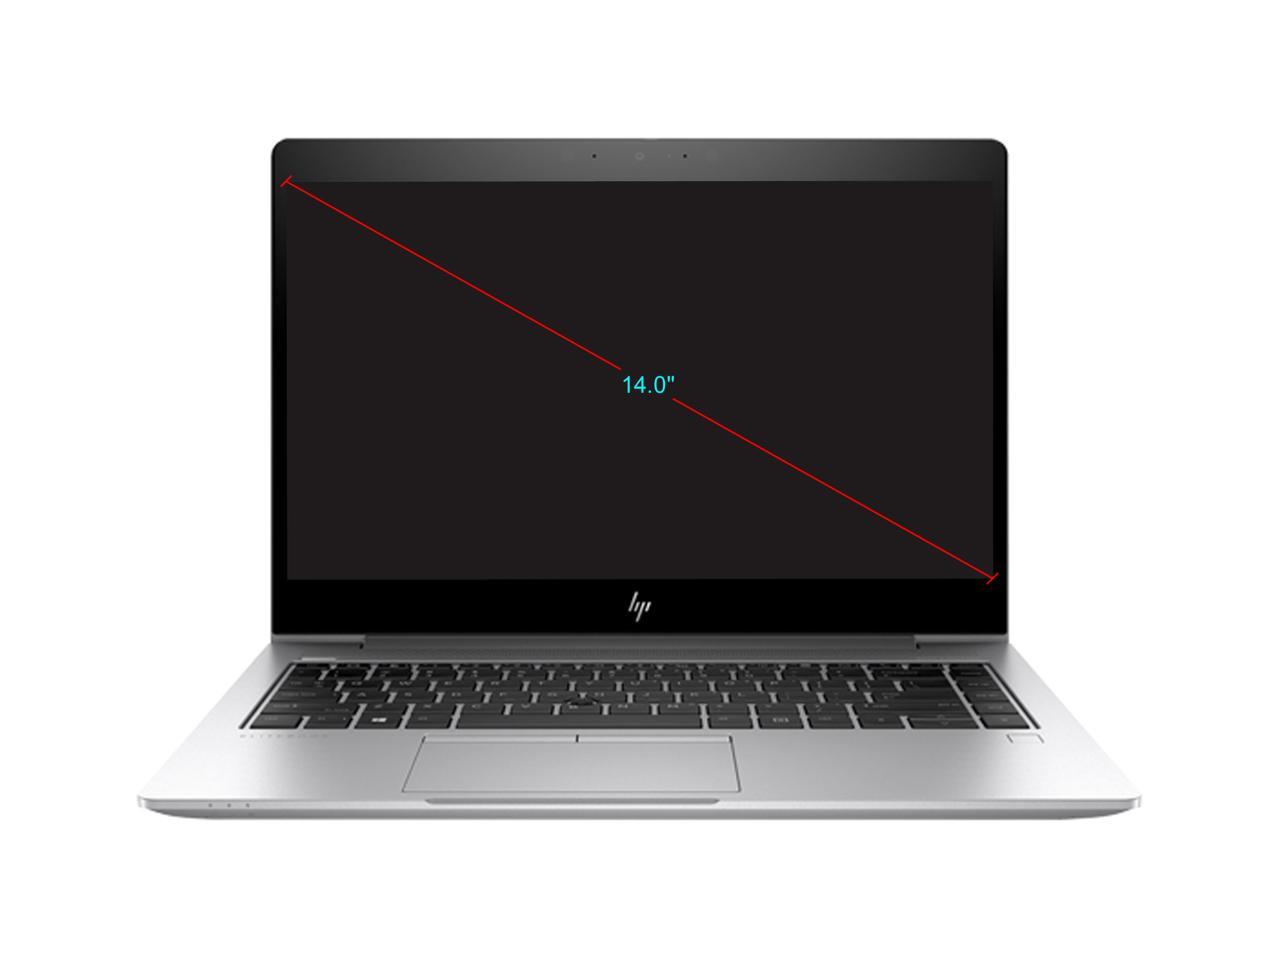 HP EliteBook 840 G6 7XA04UT 14" FHD Laptop i7-8665U 16GB 512GB SSD W10P